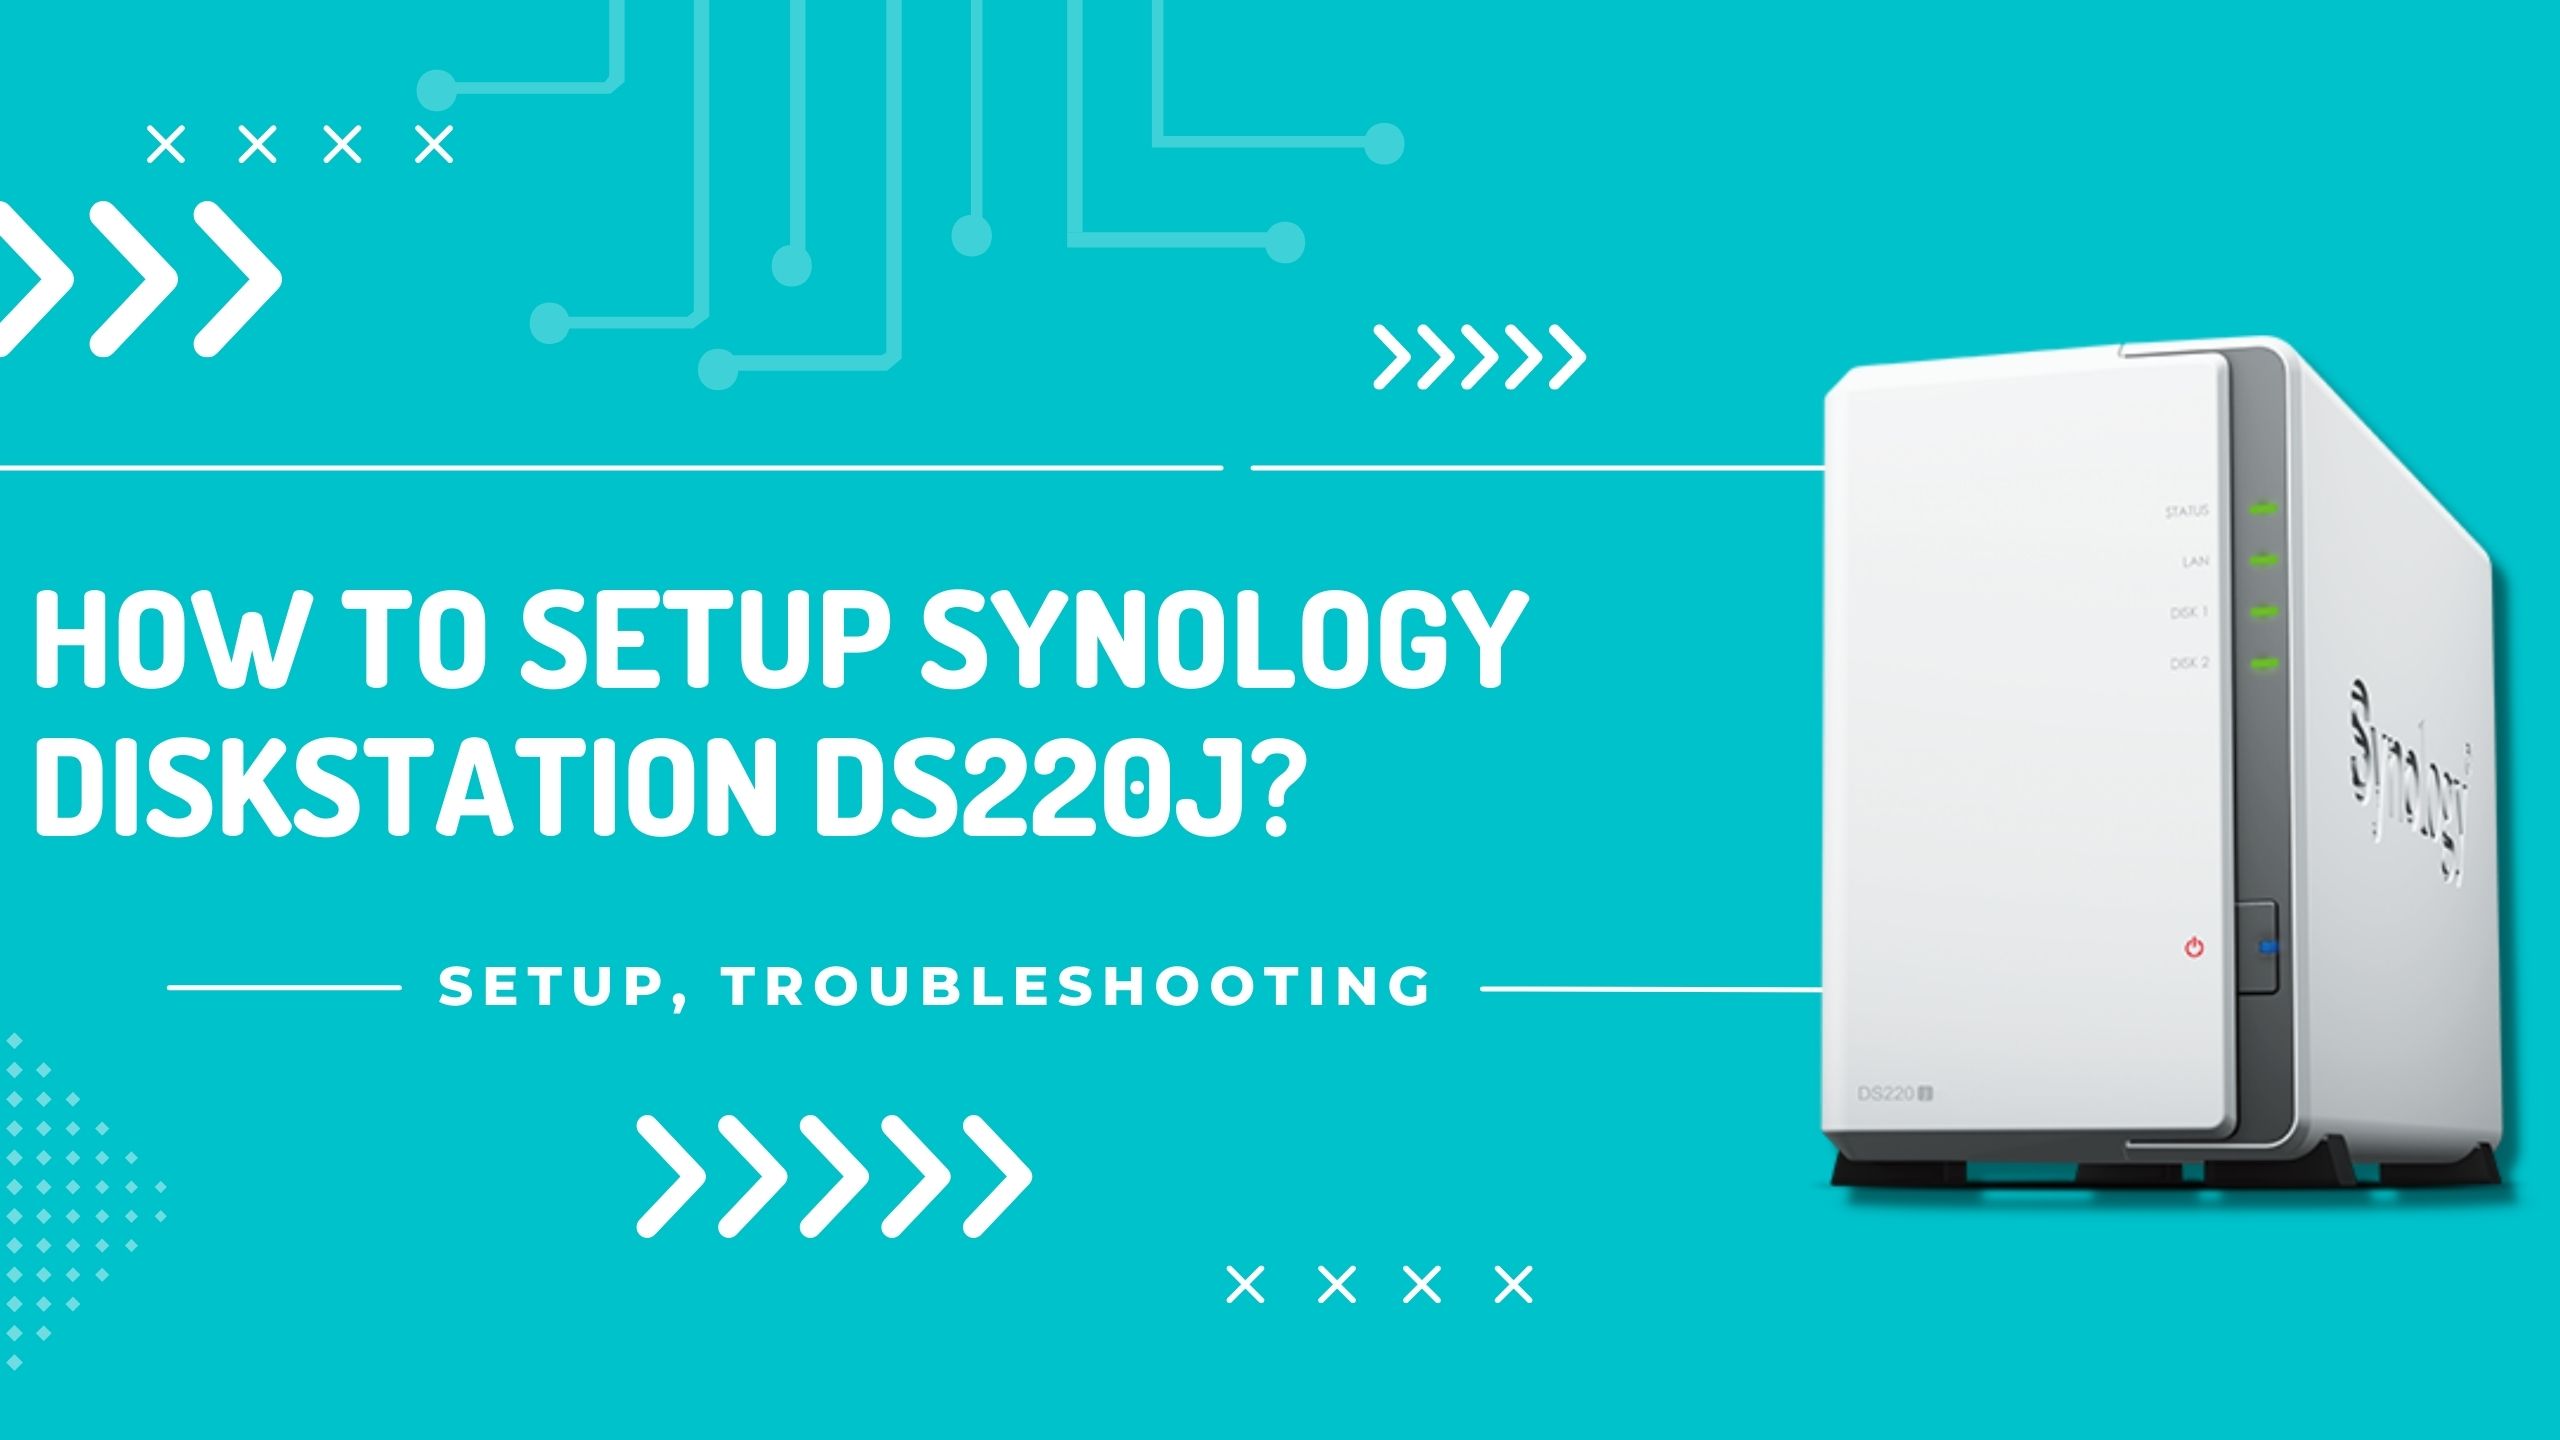 How To Setup Synology DiskStation DS220j Using Find.synology.com (Web-based Setup)?